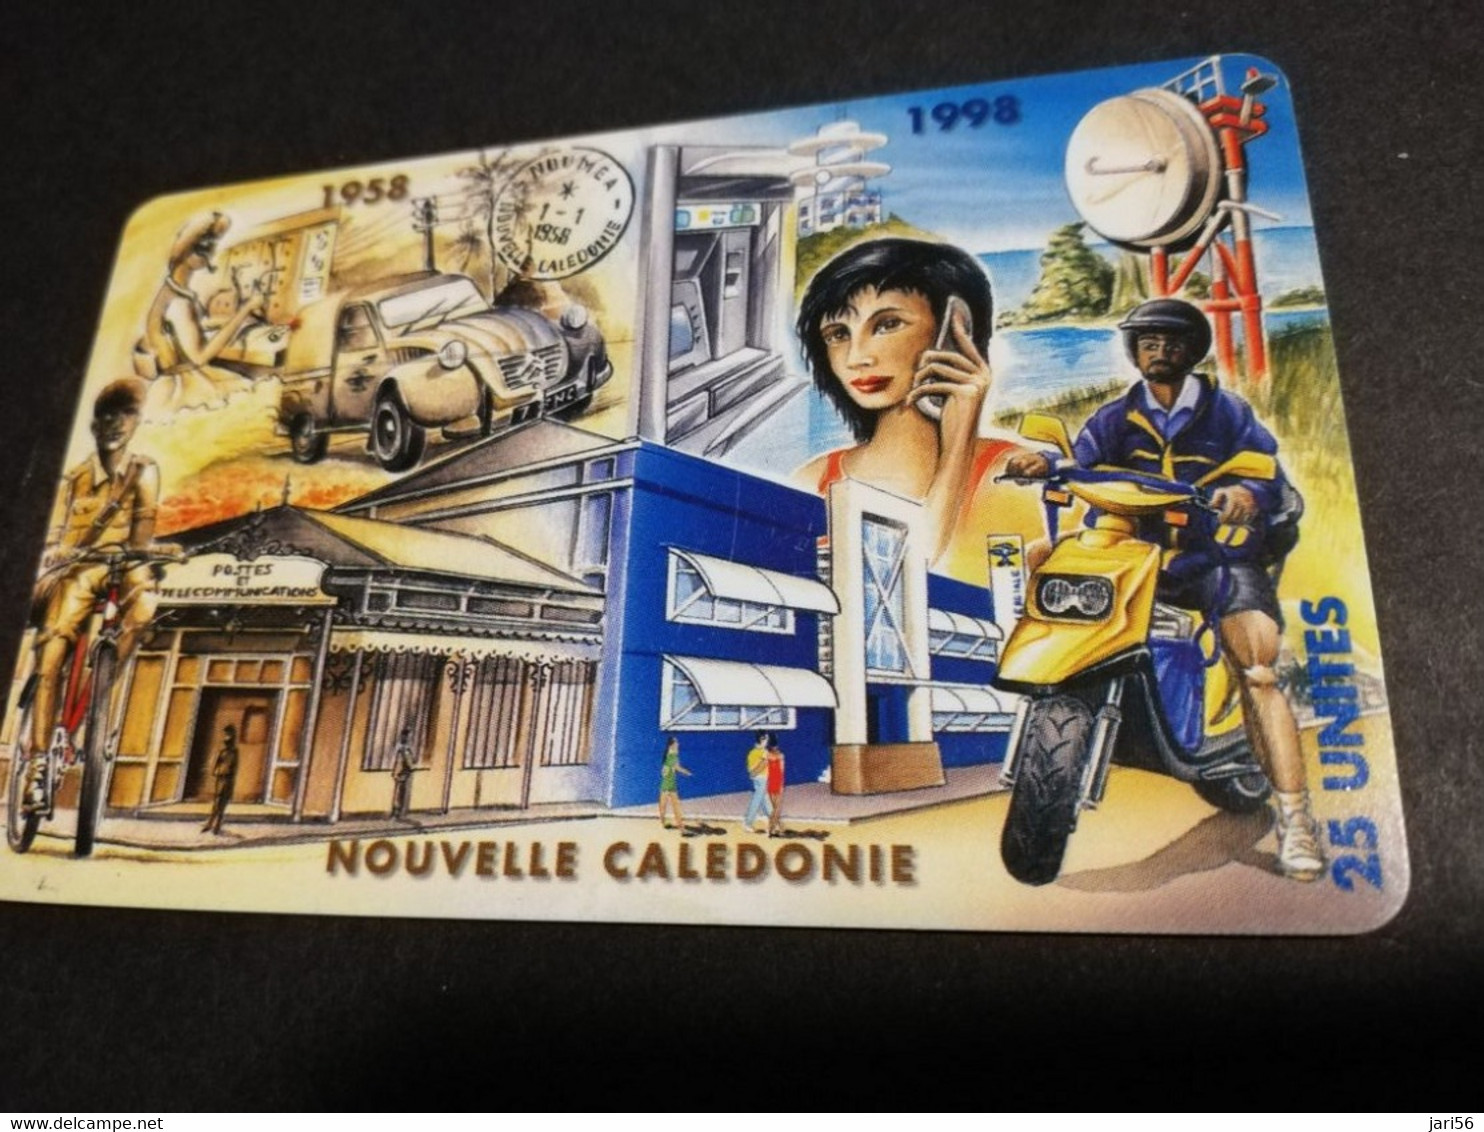 NOUVELLE CALEDONIA  CHIP CARD 25  UNITS   40EME ANNIVERSAIRE 1958-1998       ** 4186 ** - Nouvelle-Calédonie